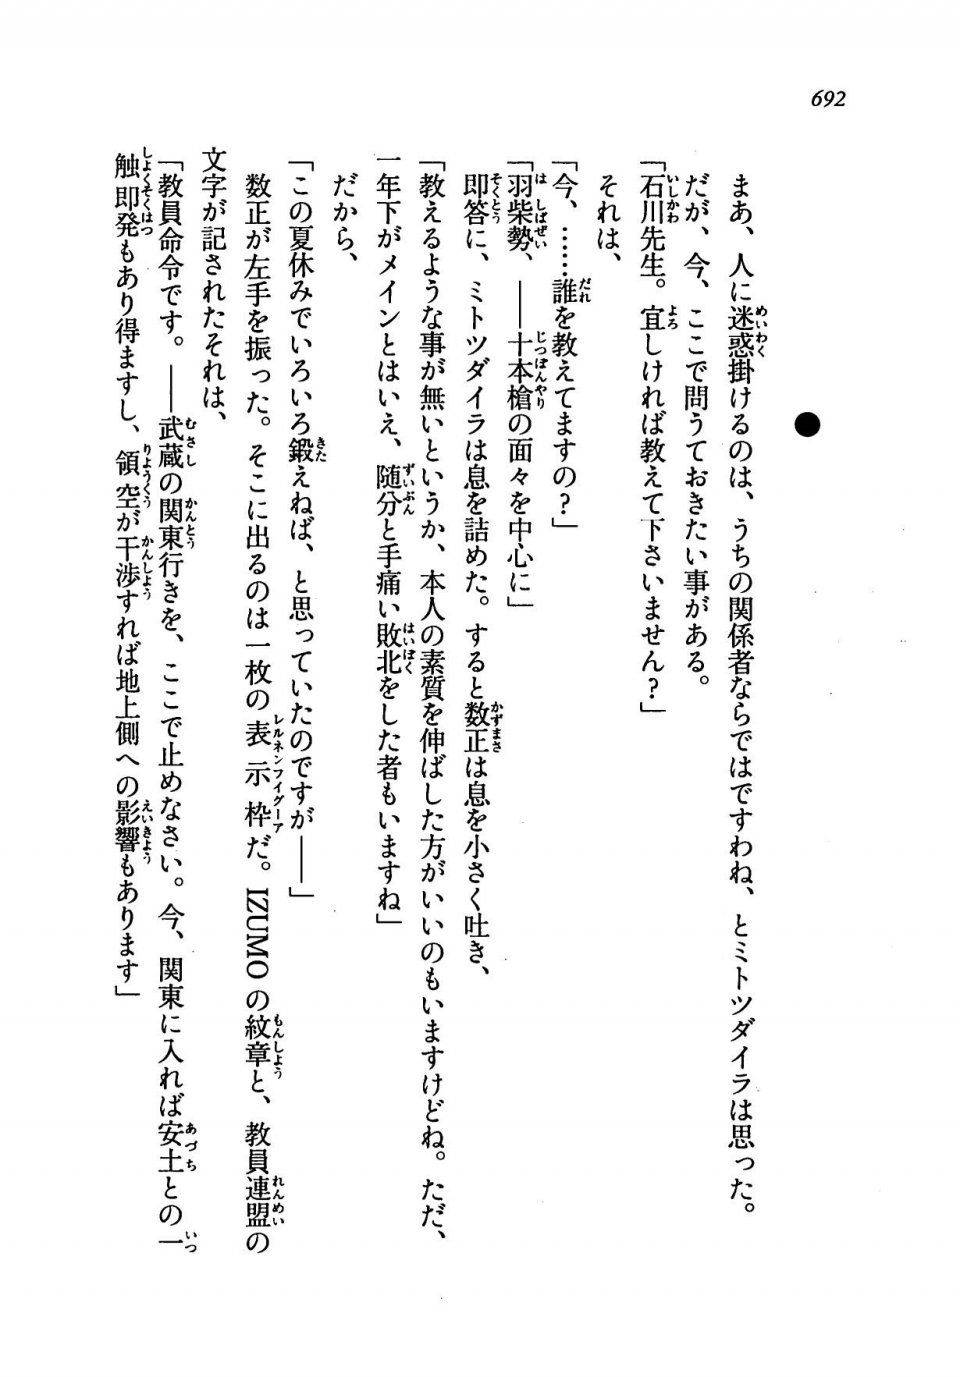 Kyoukai Senjou no Horizon LN Vol 19(8A) - Photo #692